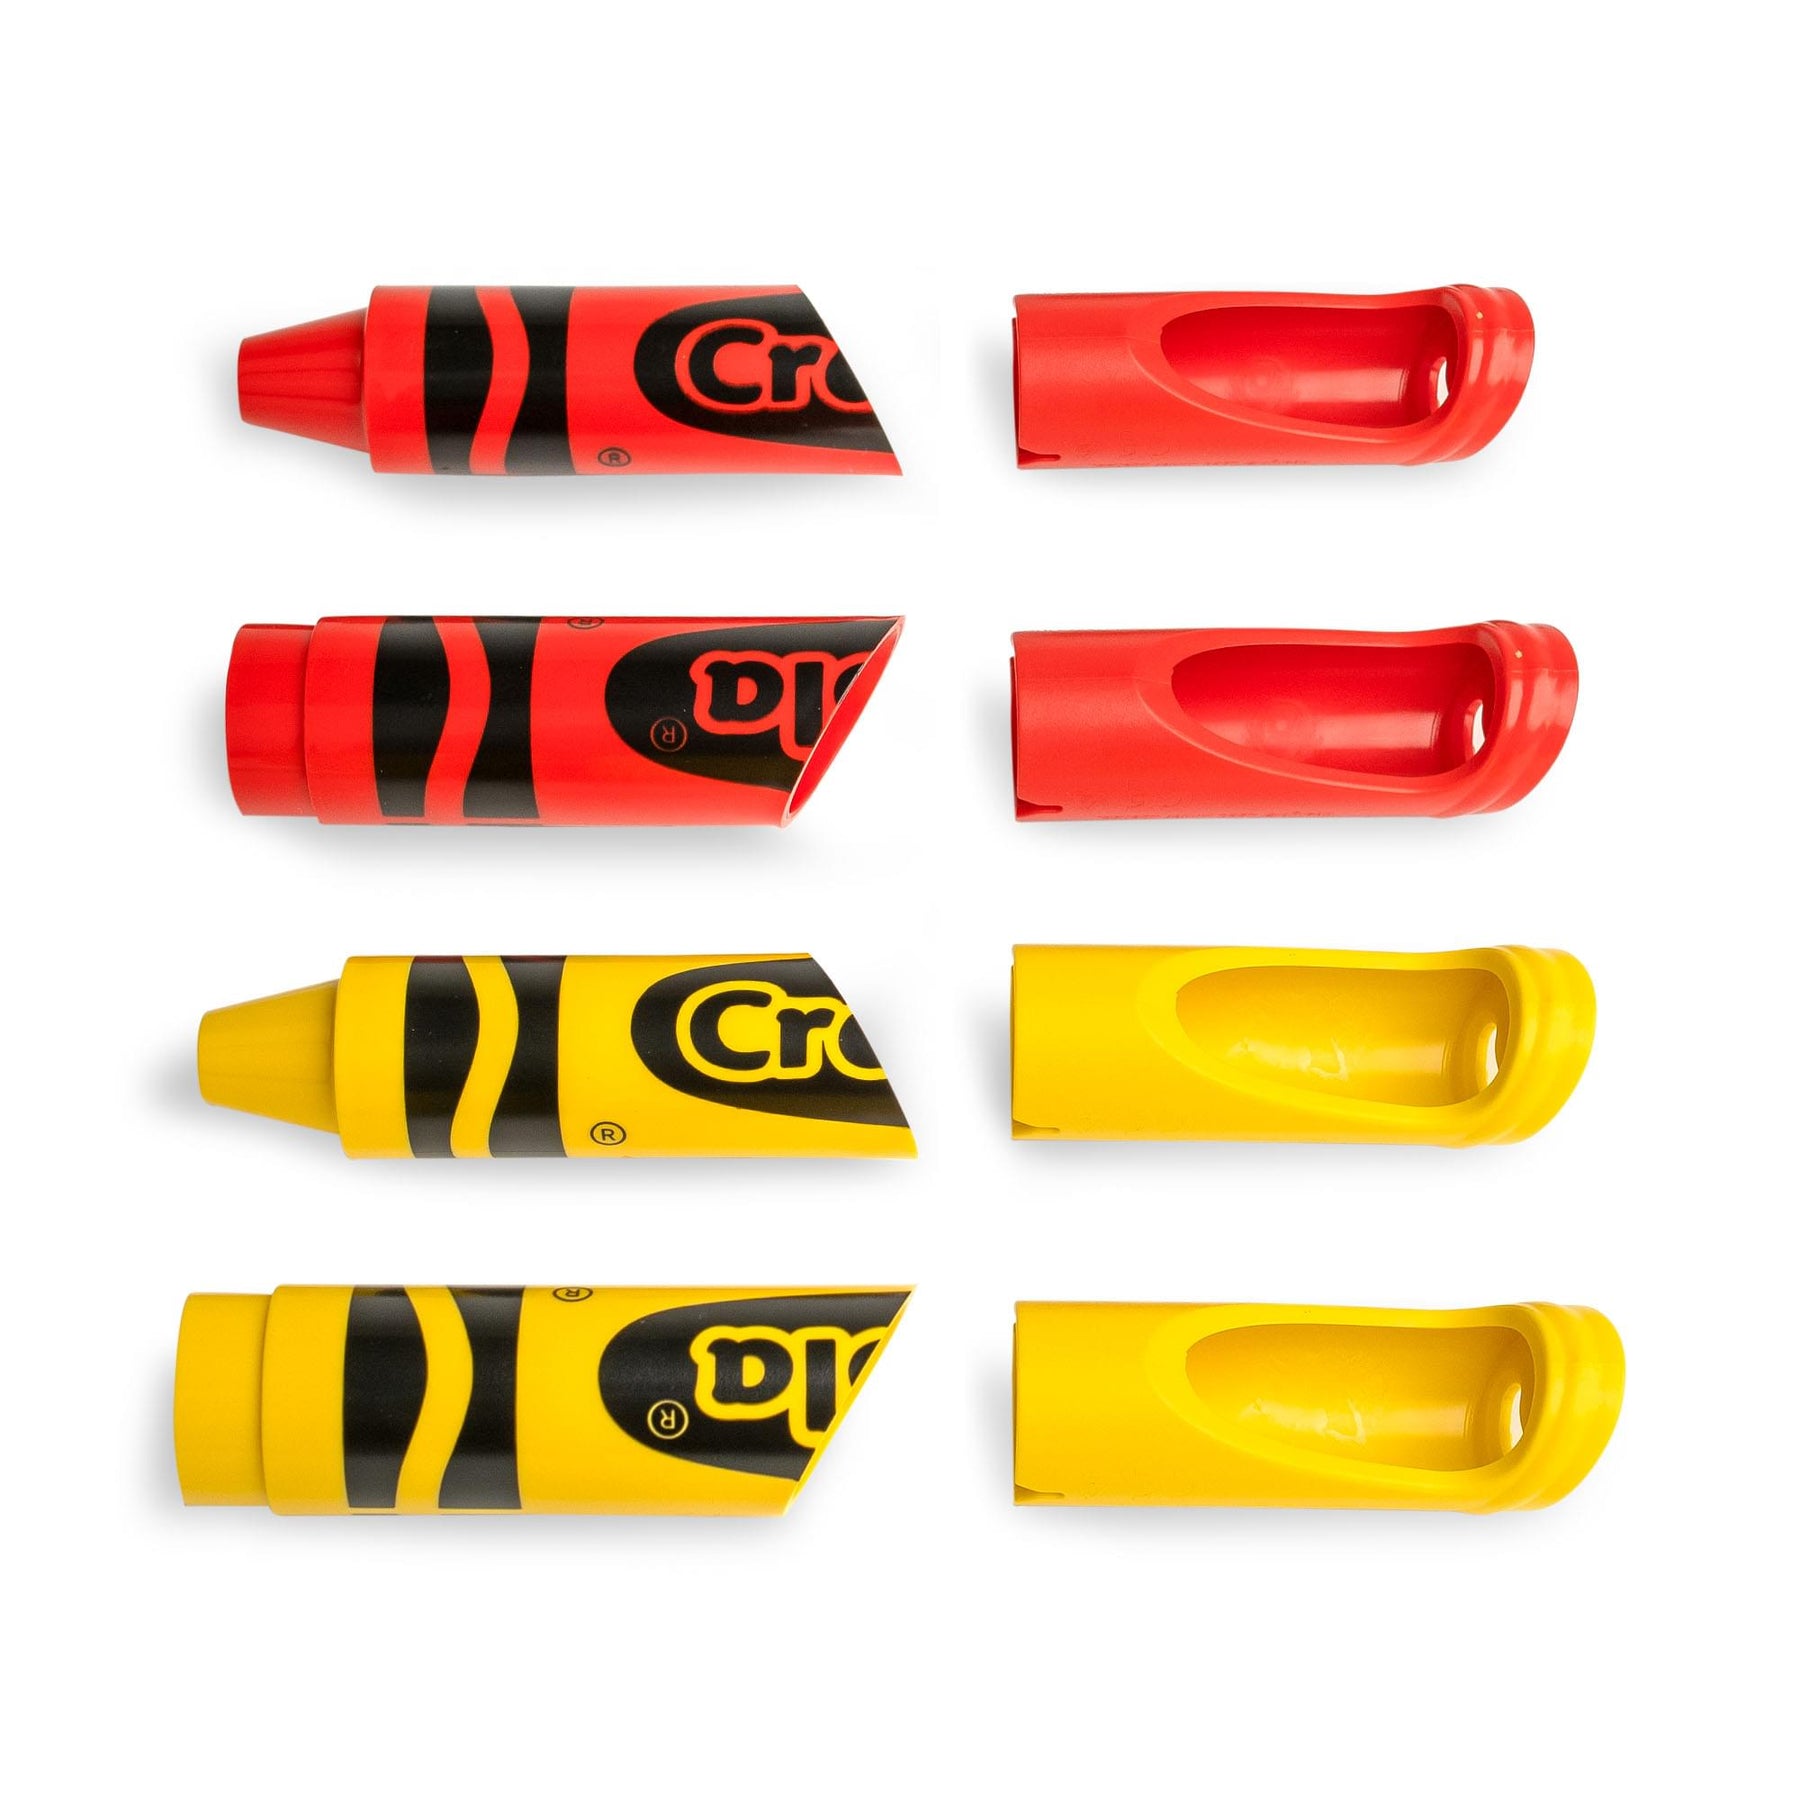 Crayola Set of 4 Crayon Wall Hooks | Happy Harlekin (2x Dandelion, 2x Red)